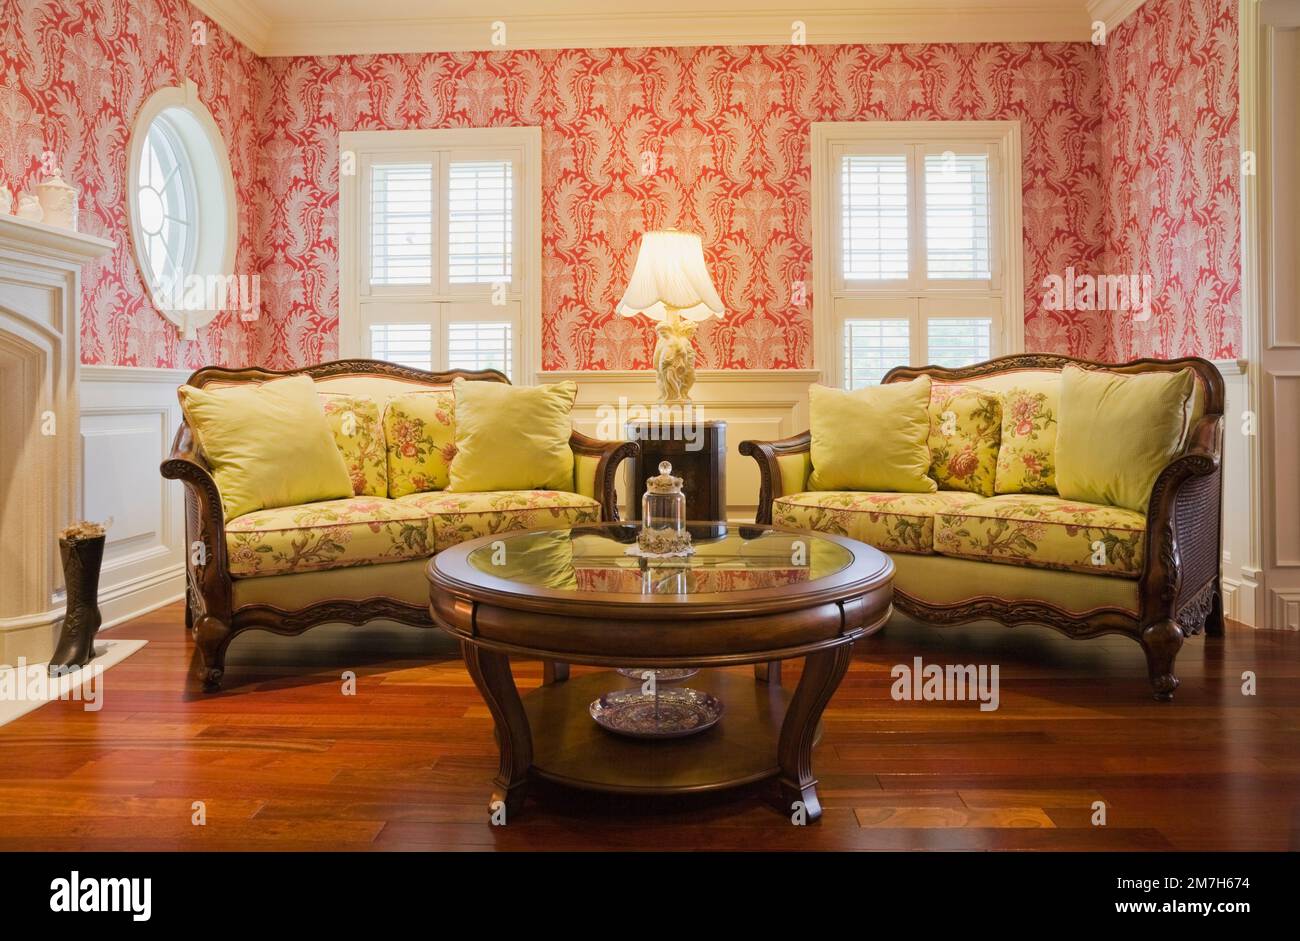 Tavolino da caffè rotondo in legno e divani ricoperti di fiori gialli nella sala salotto all'interno di un'elegante casa in stile cottage. Foto Stock